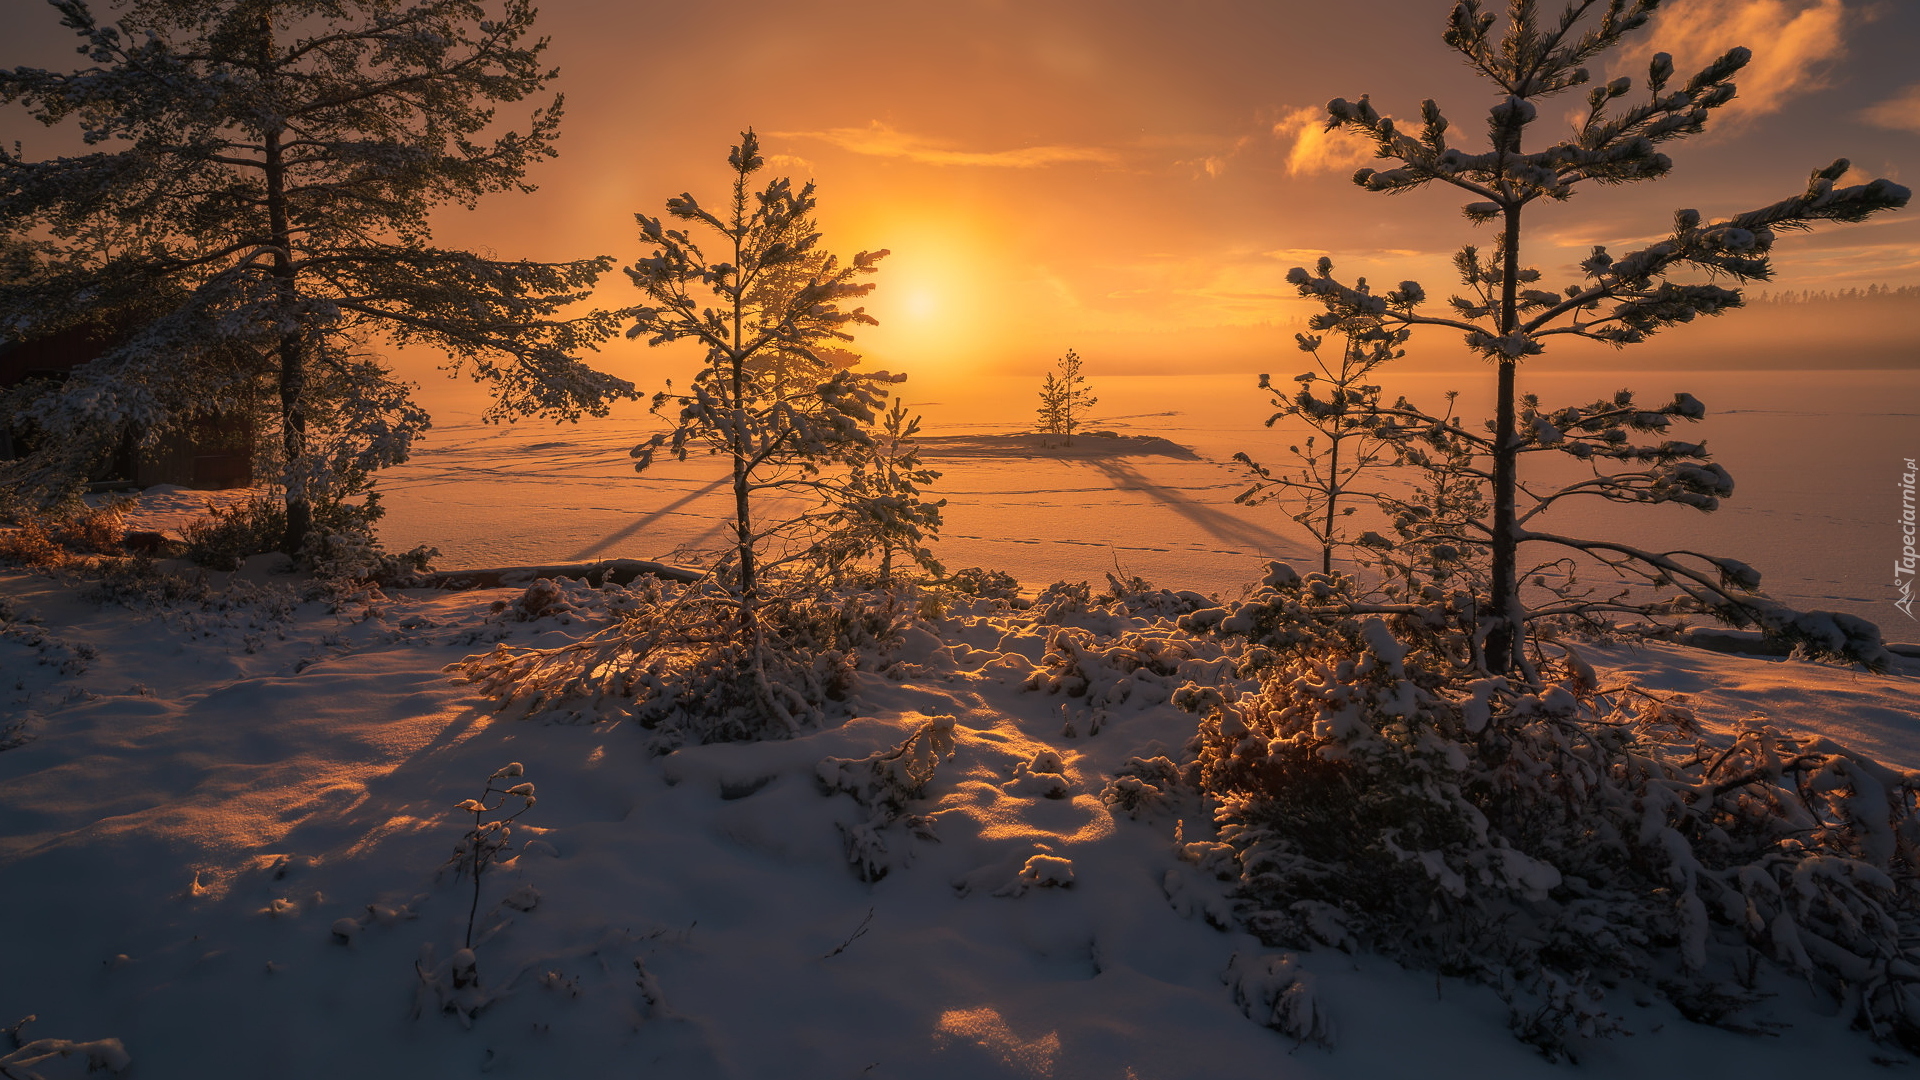 Zachód słońca, Zima, Śnieg, Zaśnieżone, Jezioro, Drzewa, Ringerike, Norwegia